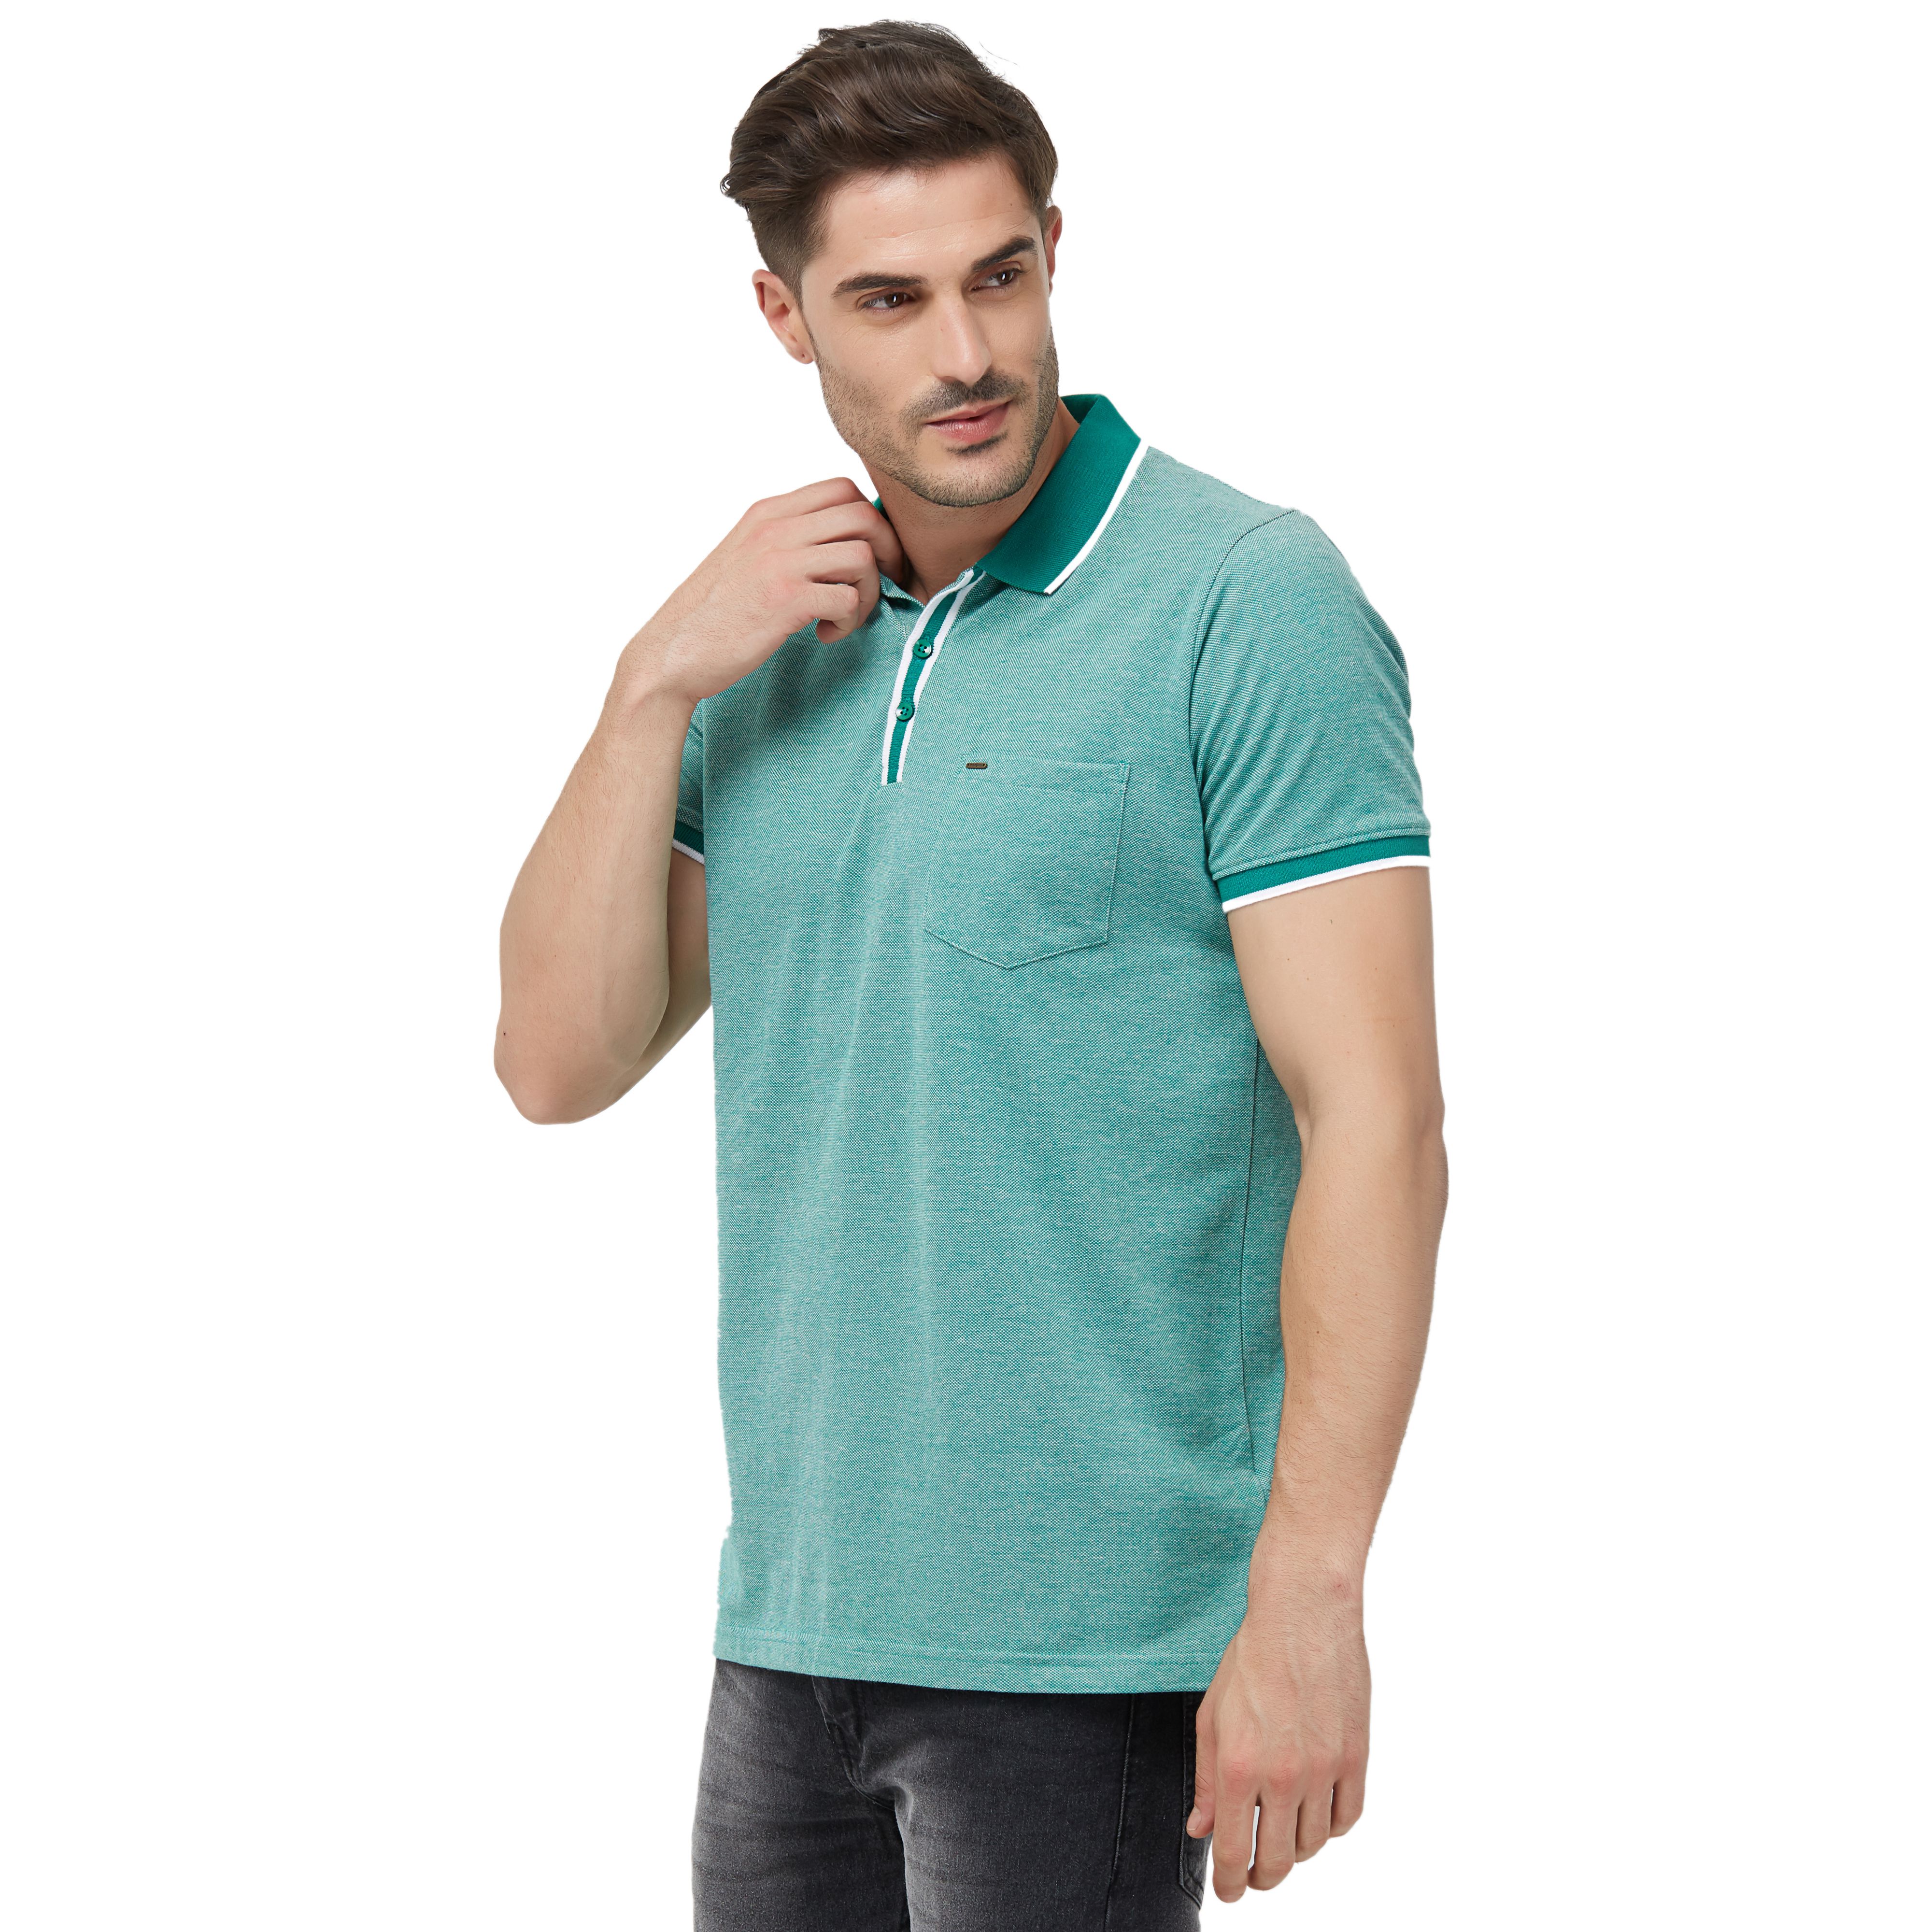 NEXGEN CLUB Cotton Blend Green Striper T-Shirt - Buy NEXGEN CLUB Cotton ...